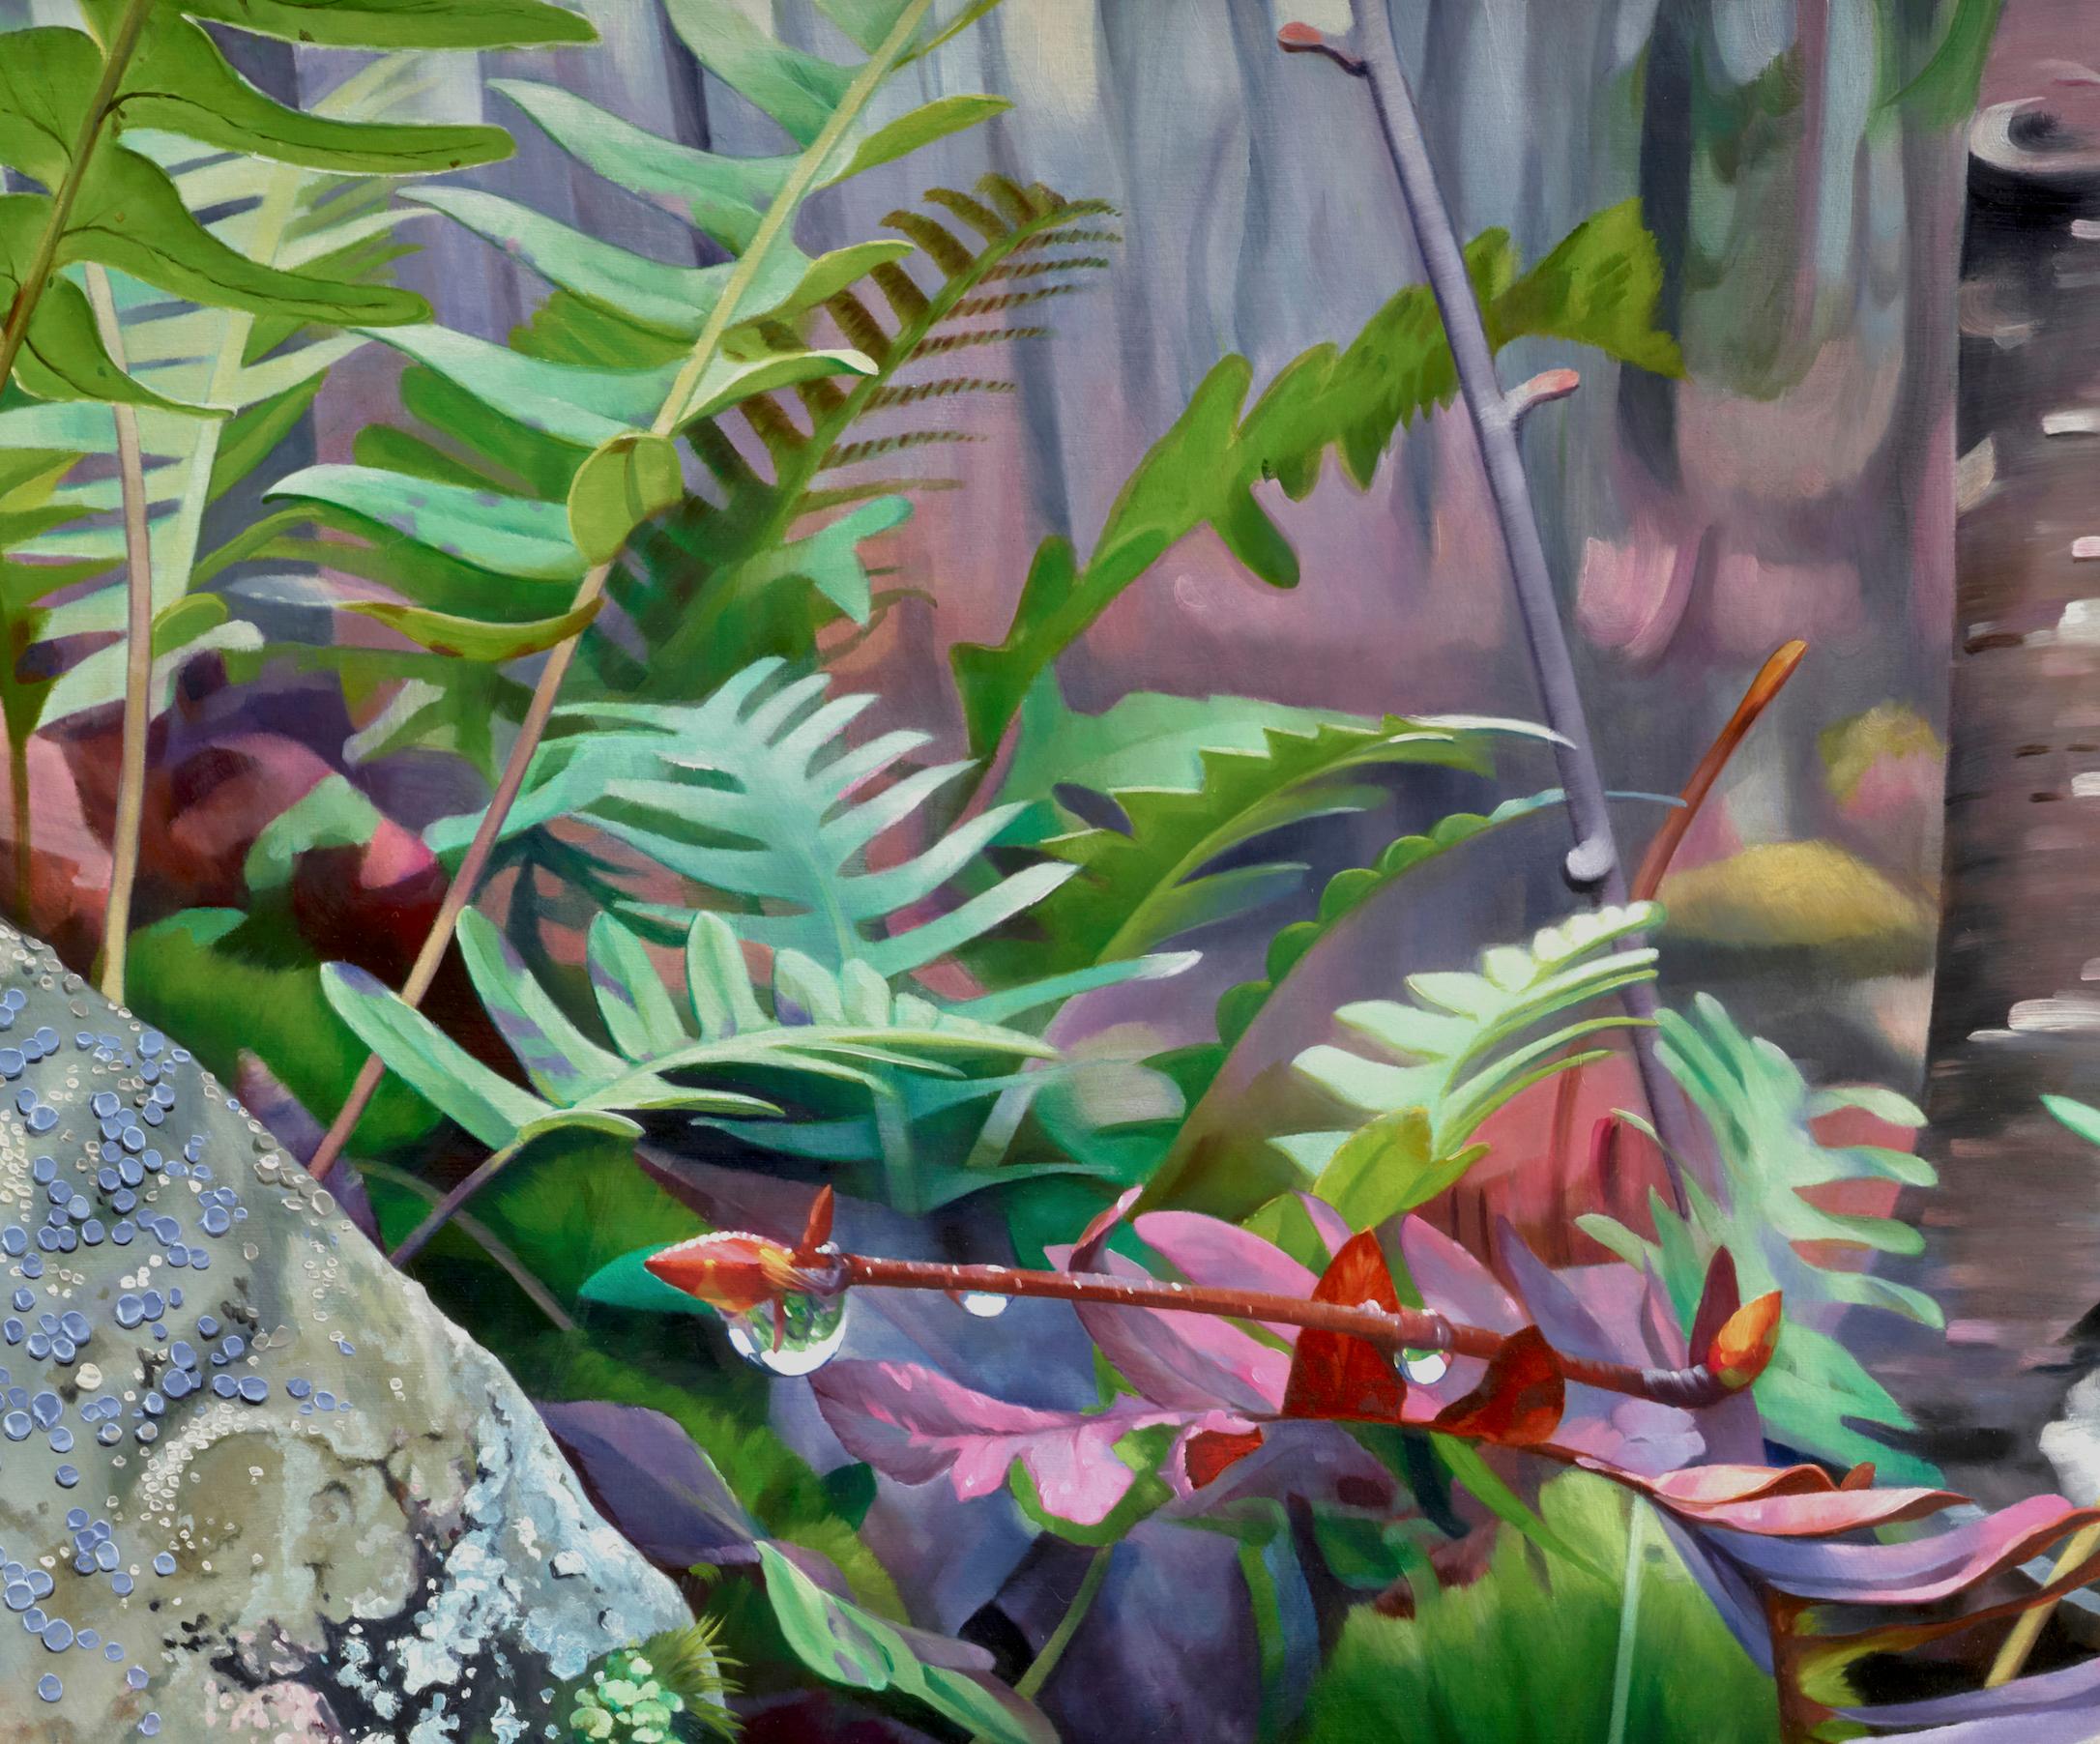 SPRING THAW - rose et vert / roche moussue / forêt du Nord-Ouest Pacifique - Contemporain Painting par Alexandra Pacula